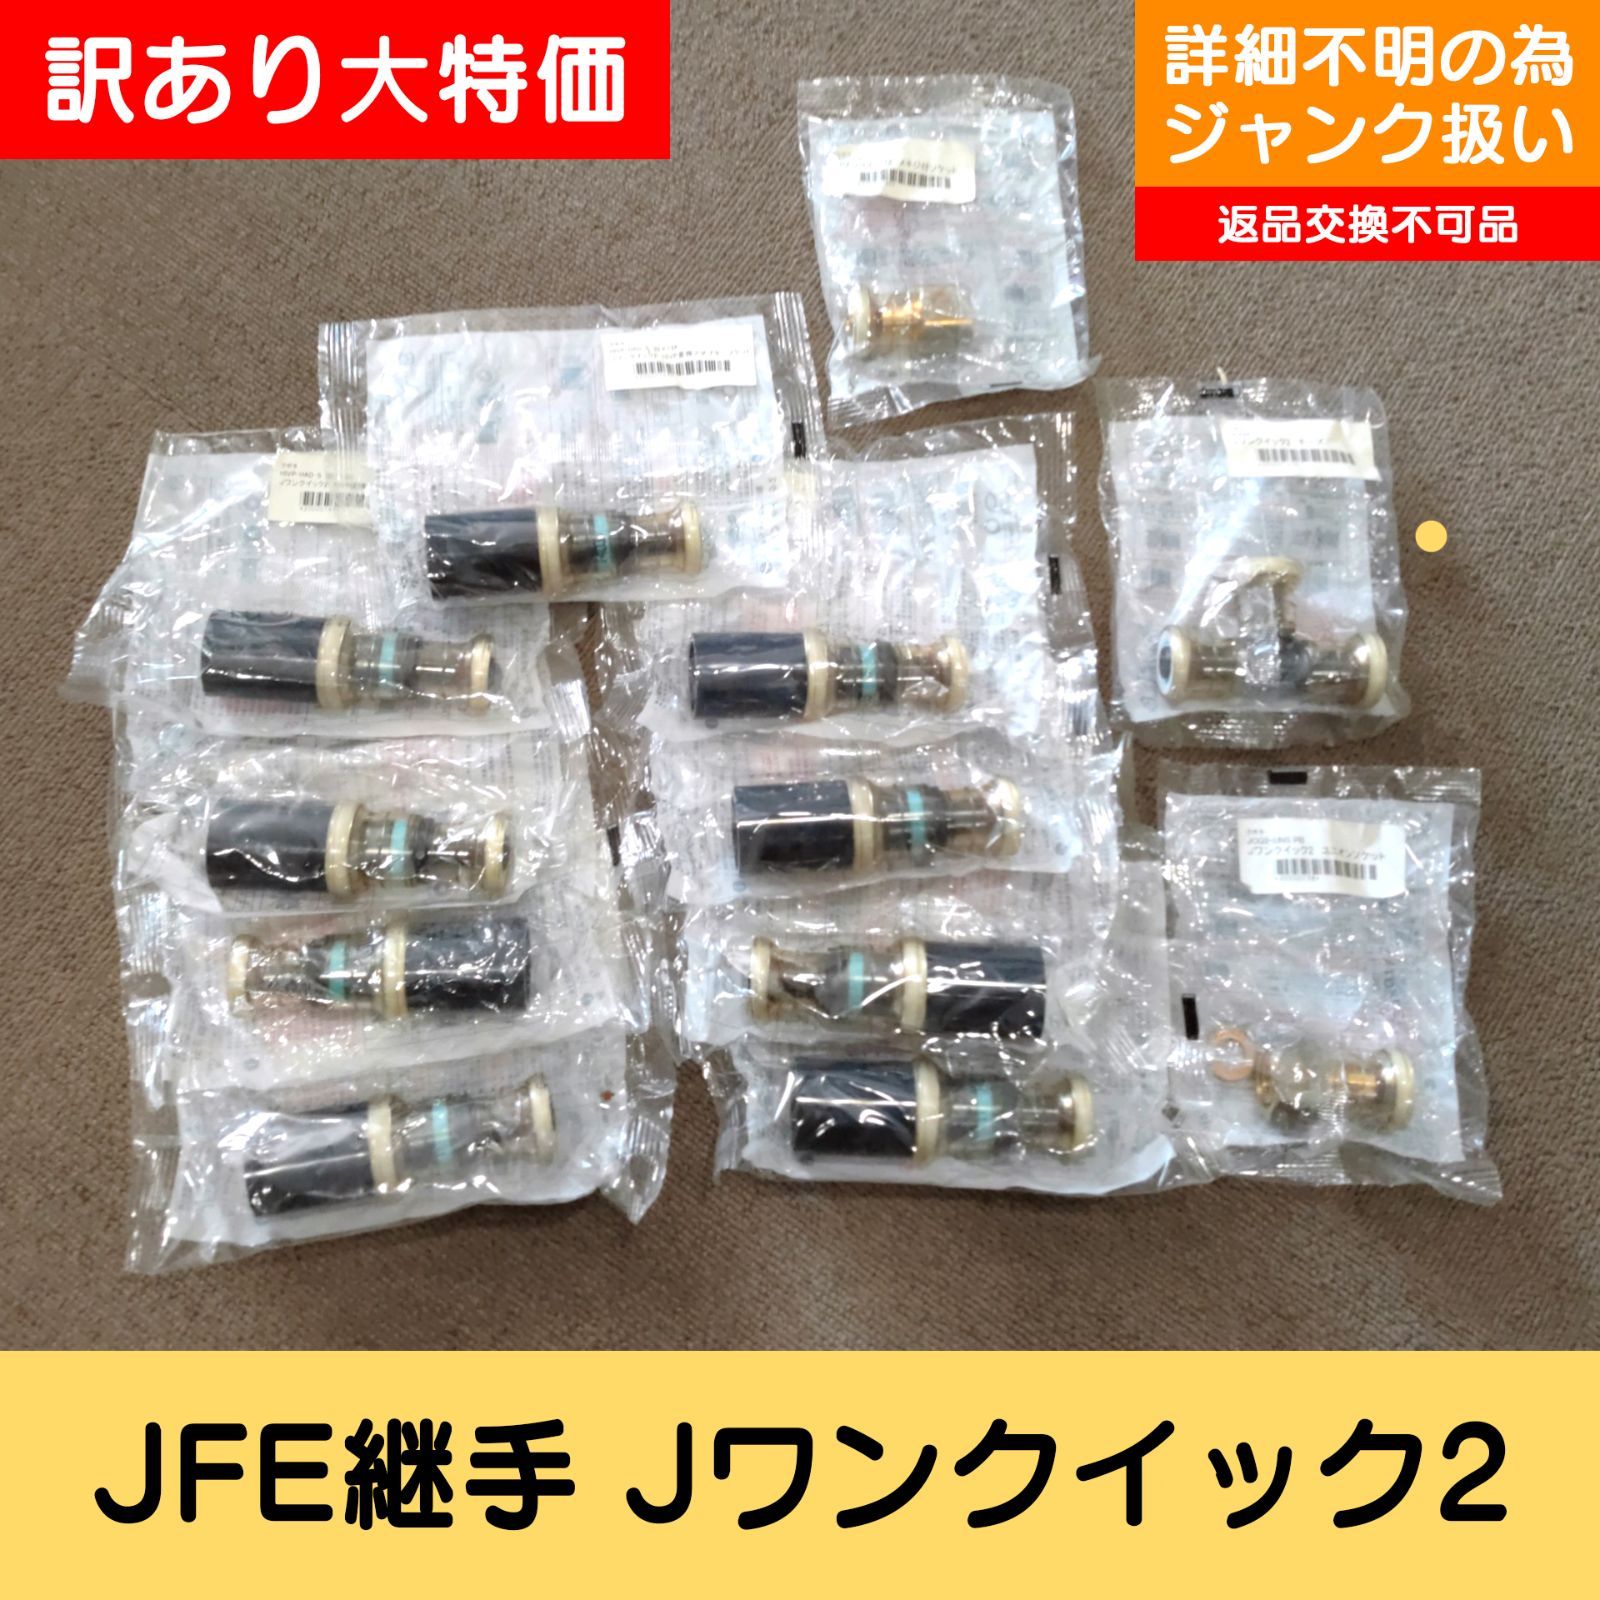 訳あり 未開封品 JFE継手 Jワンクイック2 変換アダプタソケット チーズ 